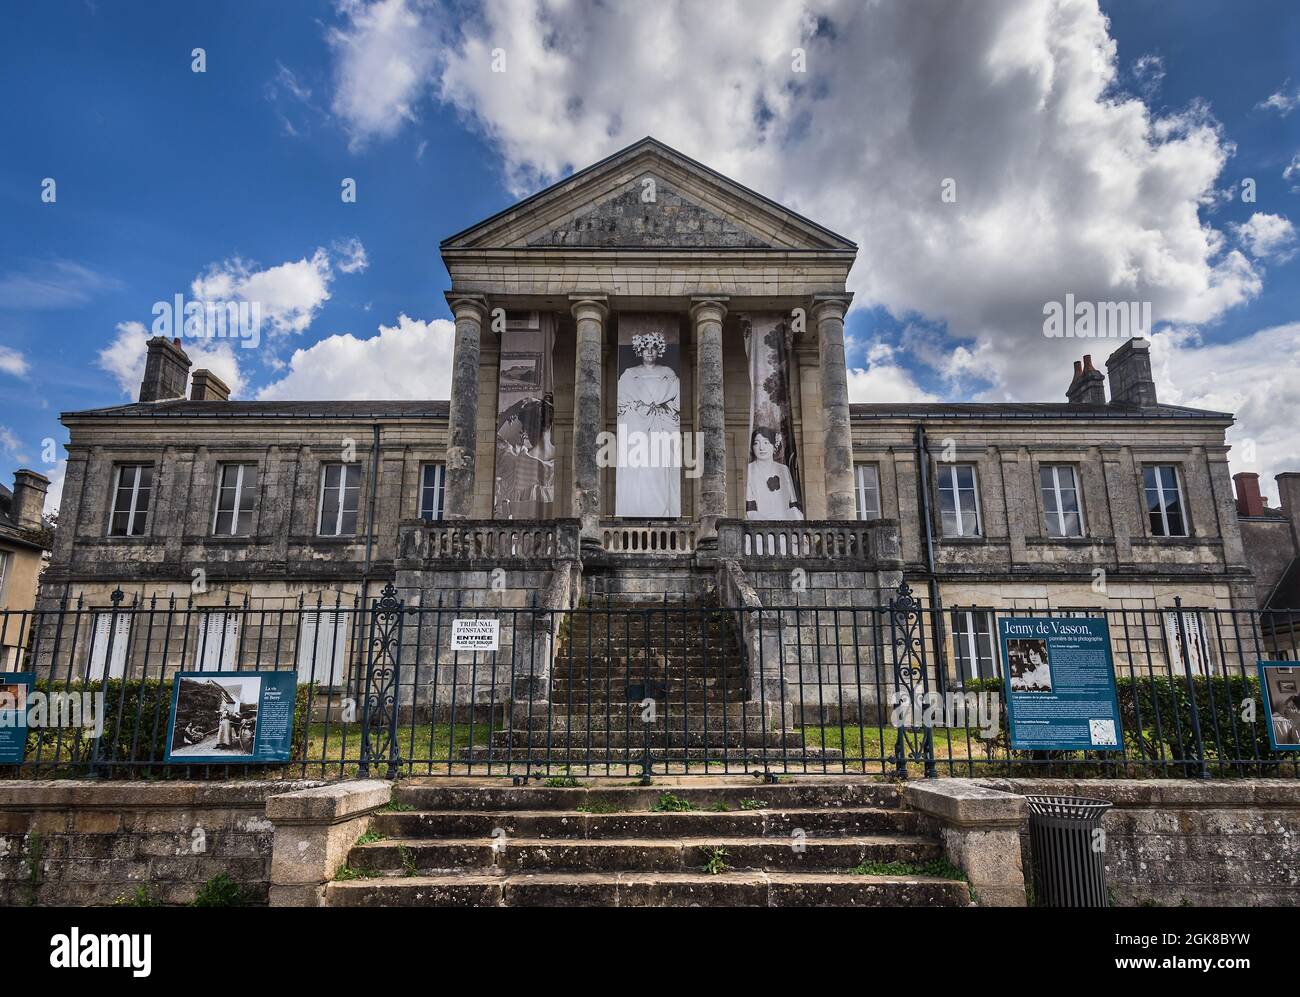 Old Court House in the Place de la République, La Chatre, Indre (36), France. Stock Photo